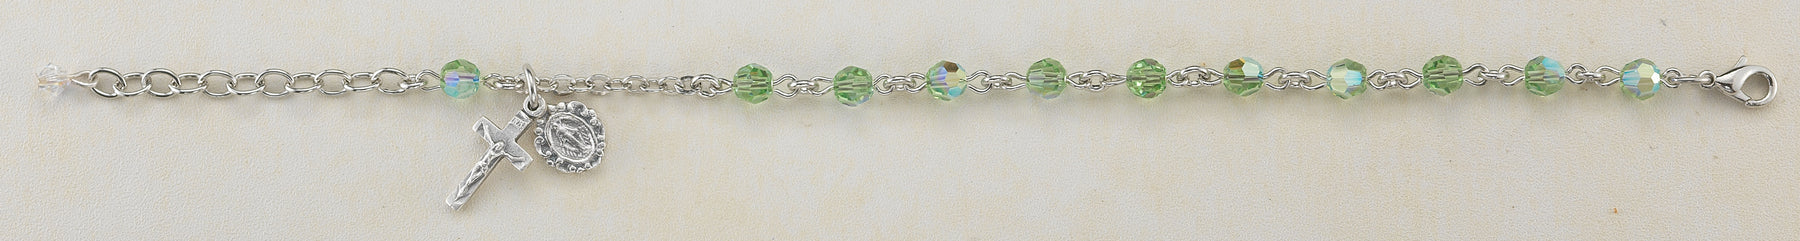 6mm Chrysolite Swarovksi Crystal Rosary Bracelet